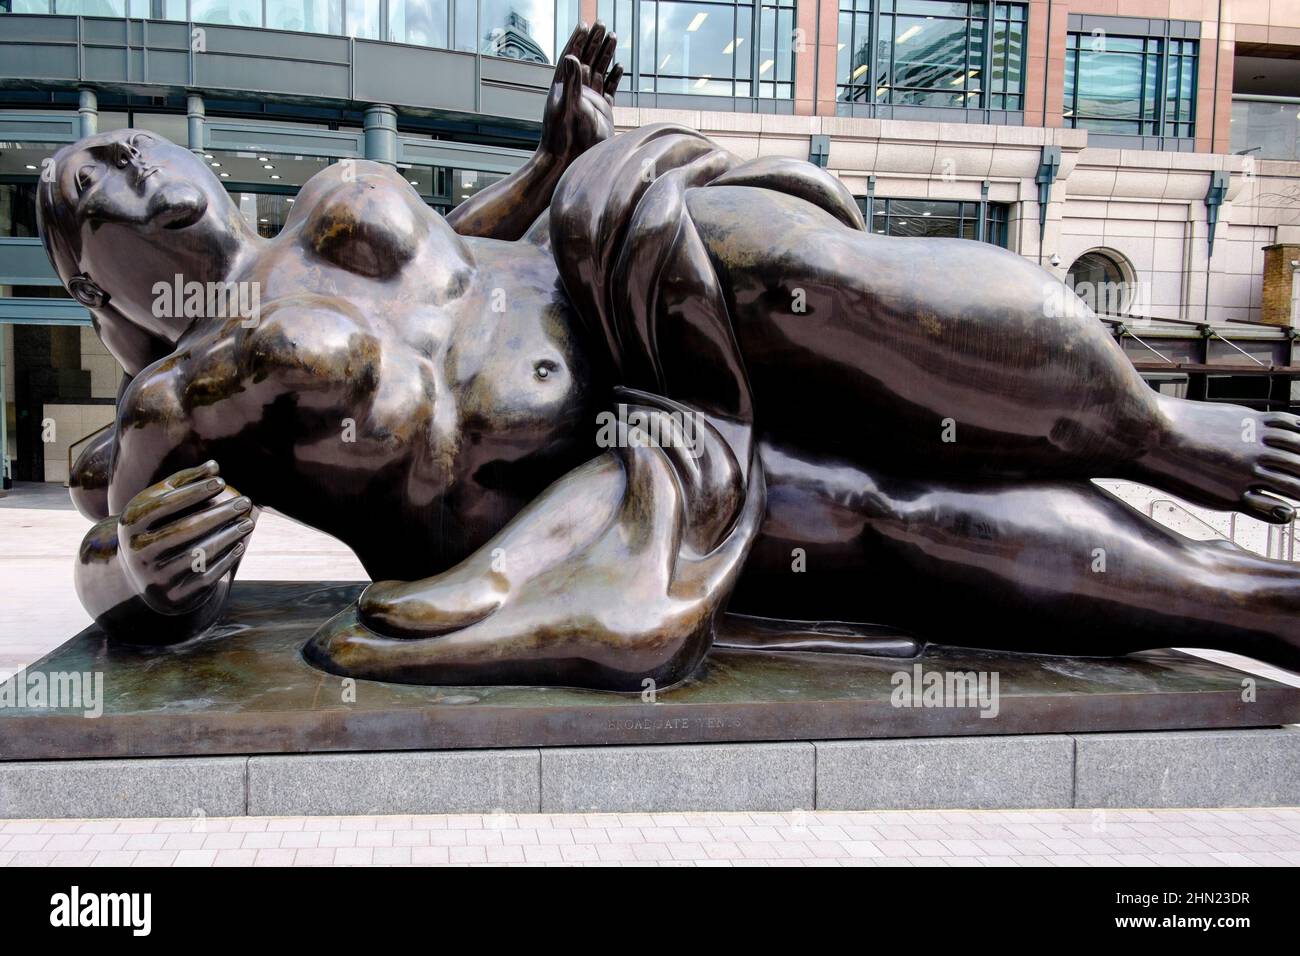 La sculpture de Broadgate venus de l'artiste colombien Fernando Botero, Exchange Square, Broadgate, City of London, YK Banque D'Images